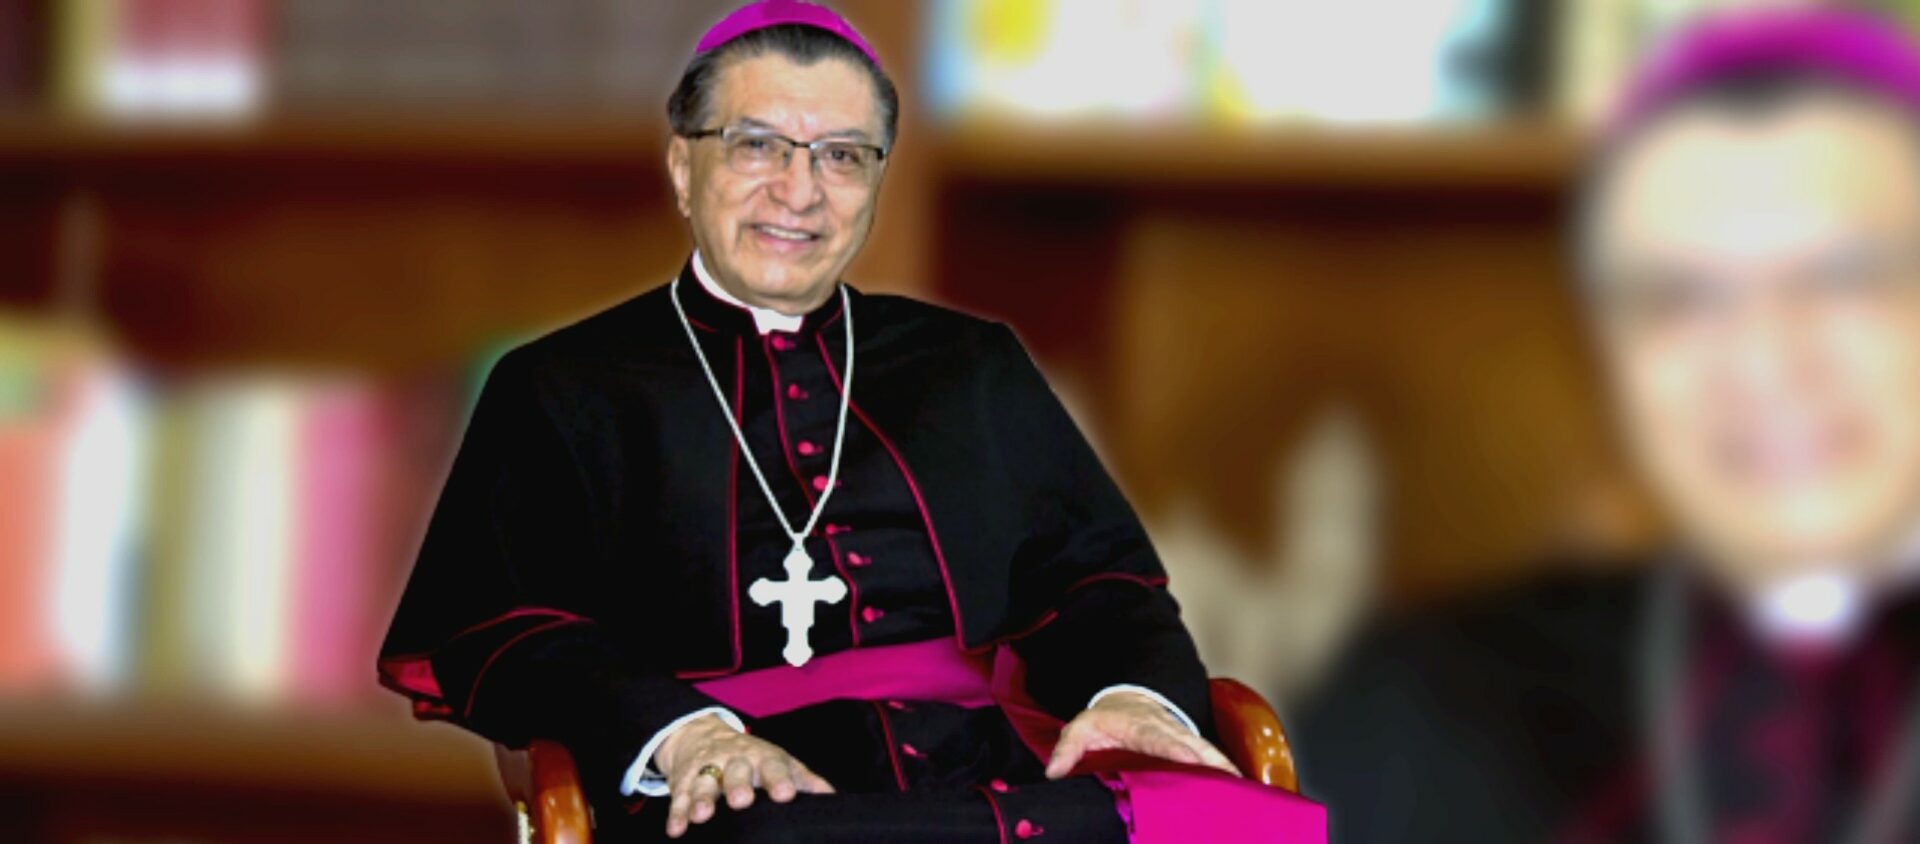 Mgr Oscar Urbina Ortega, archevêque de Villavicencio, en Colombie | ©  arquidiocesisdevillavicencio.org.co 